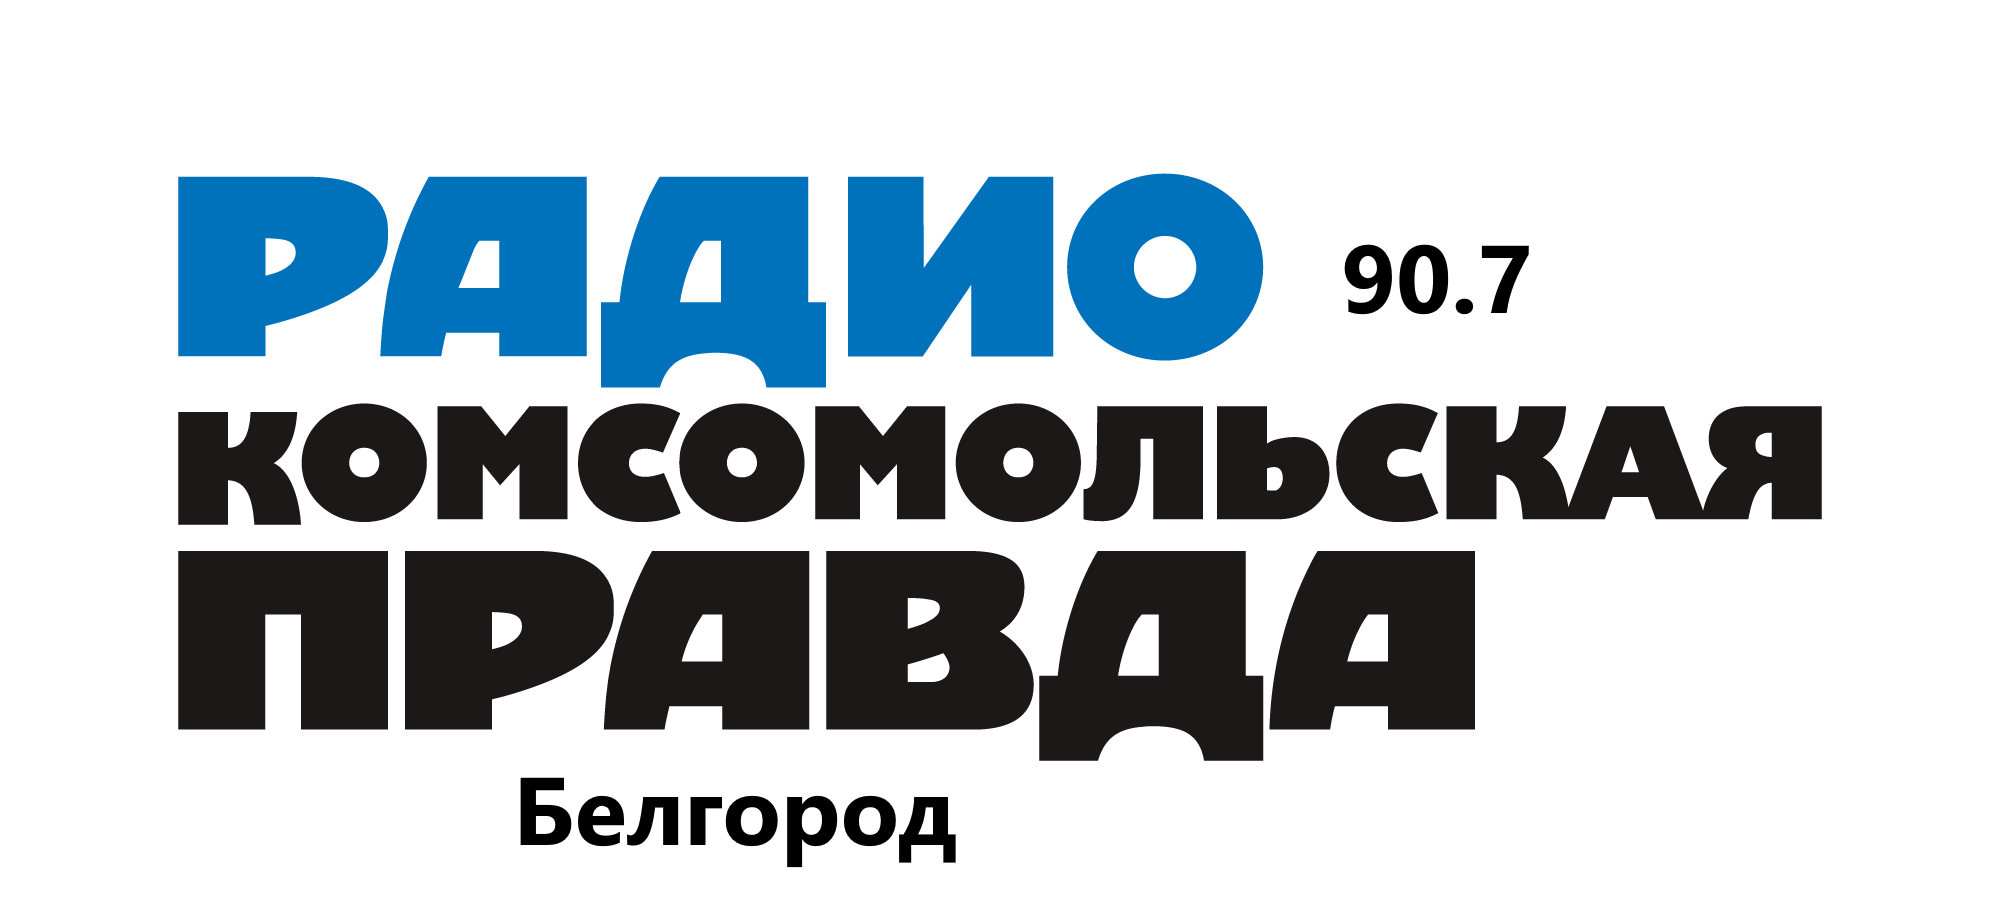 Комсомольская правда 90.7 FM, г. Белгород